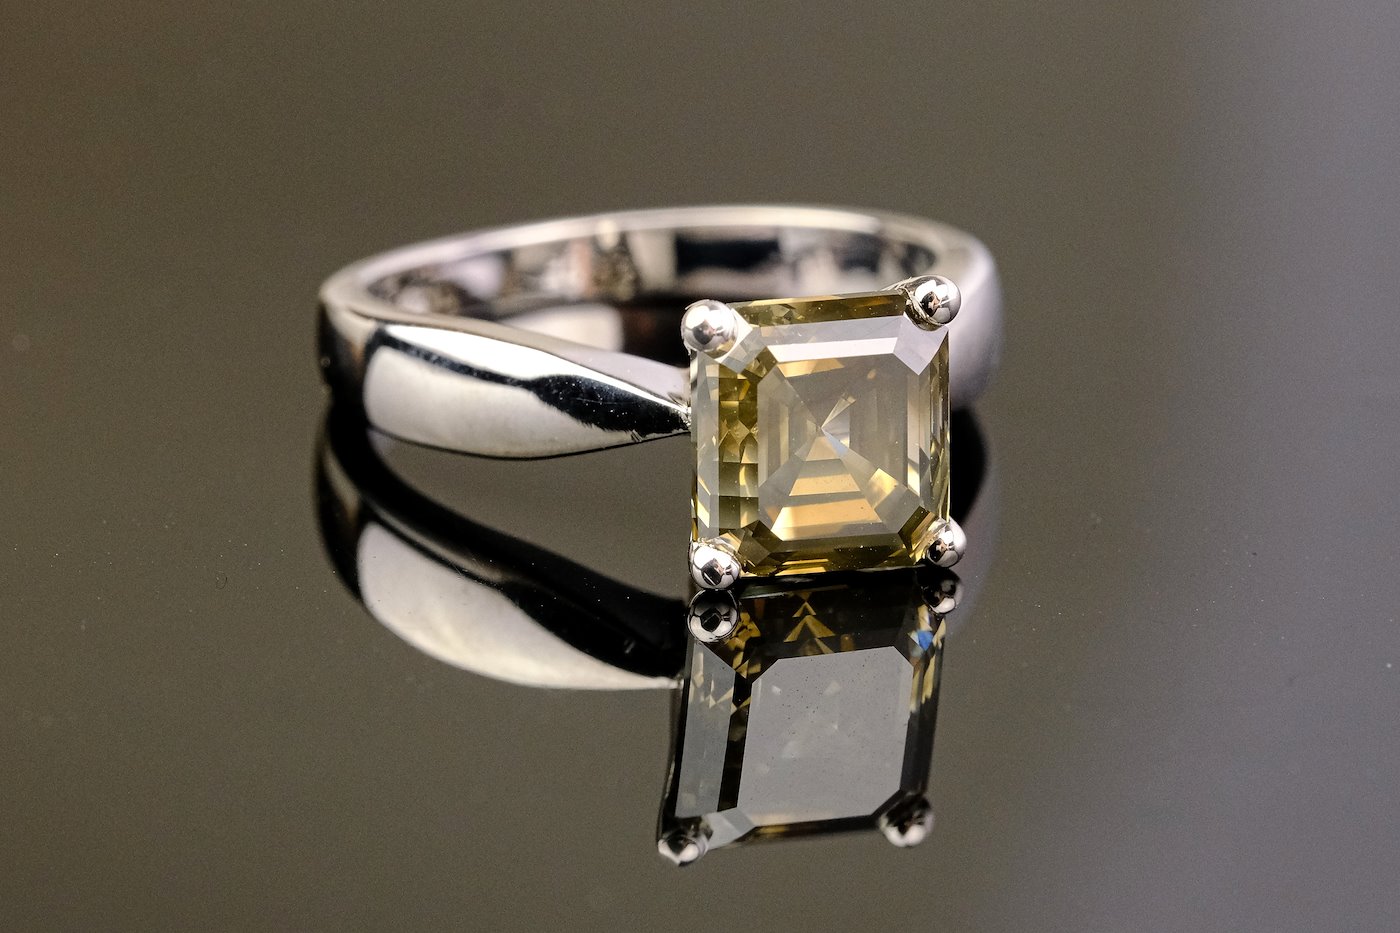 .. - Luxusní psten s 3,03 ct fancy color diamantem, zlato 585/1000, značeno platnou puncovní značkou "labuť", hrubá hmotnost 